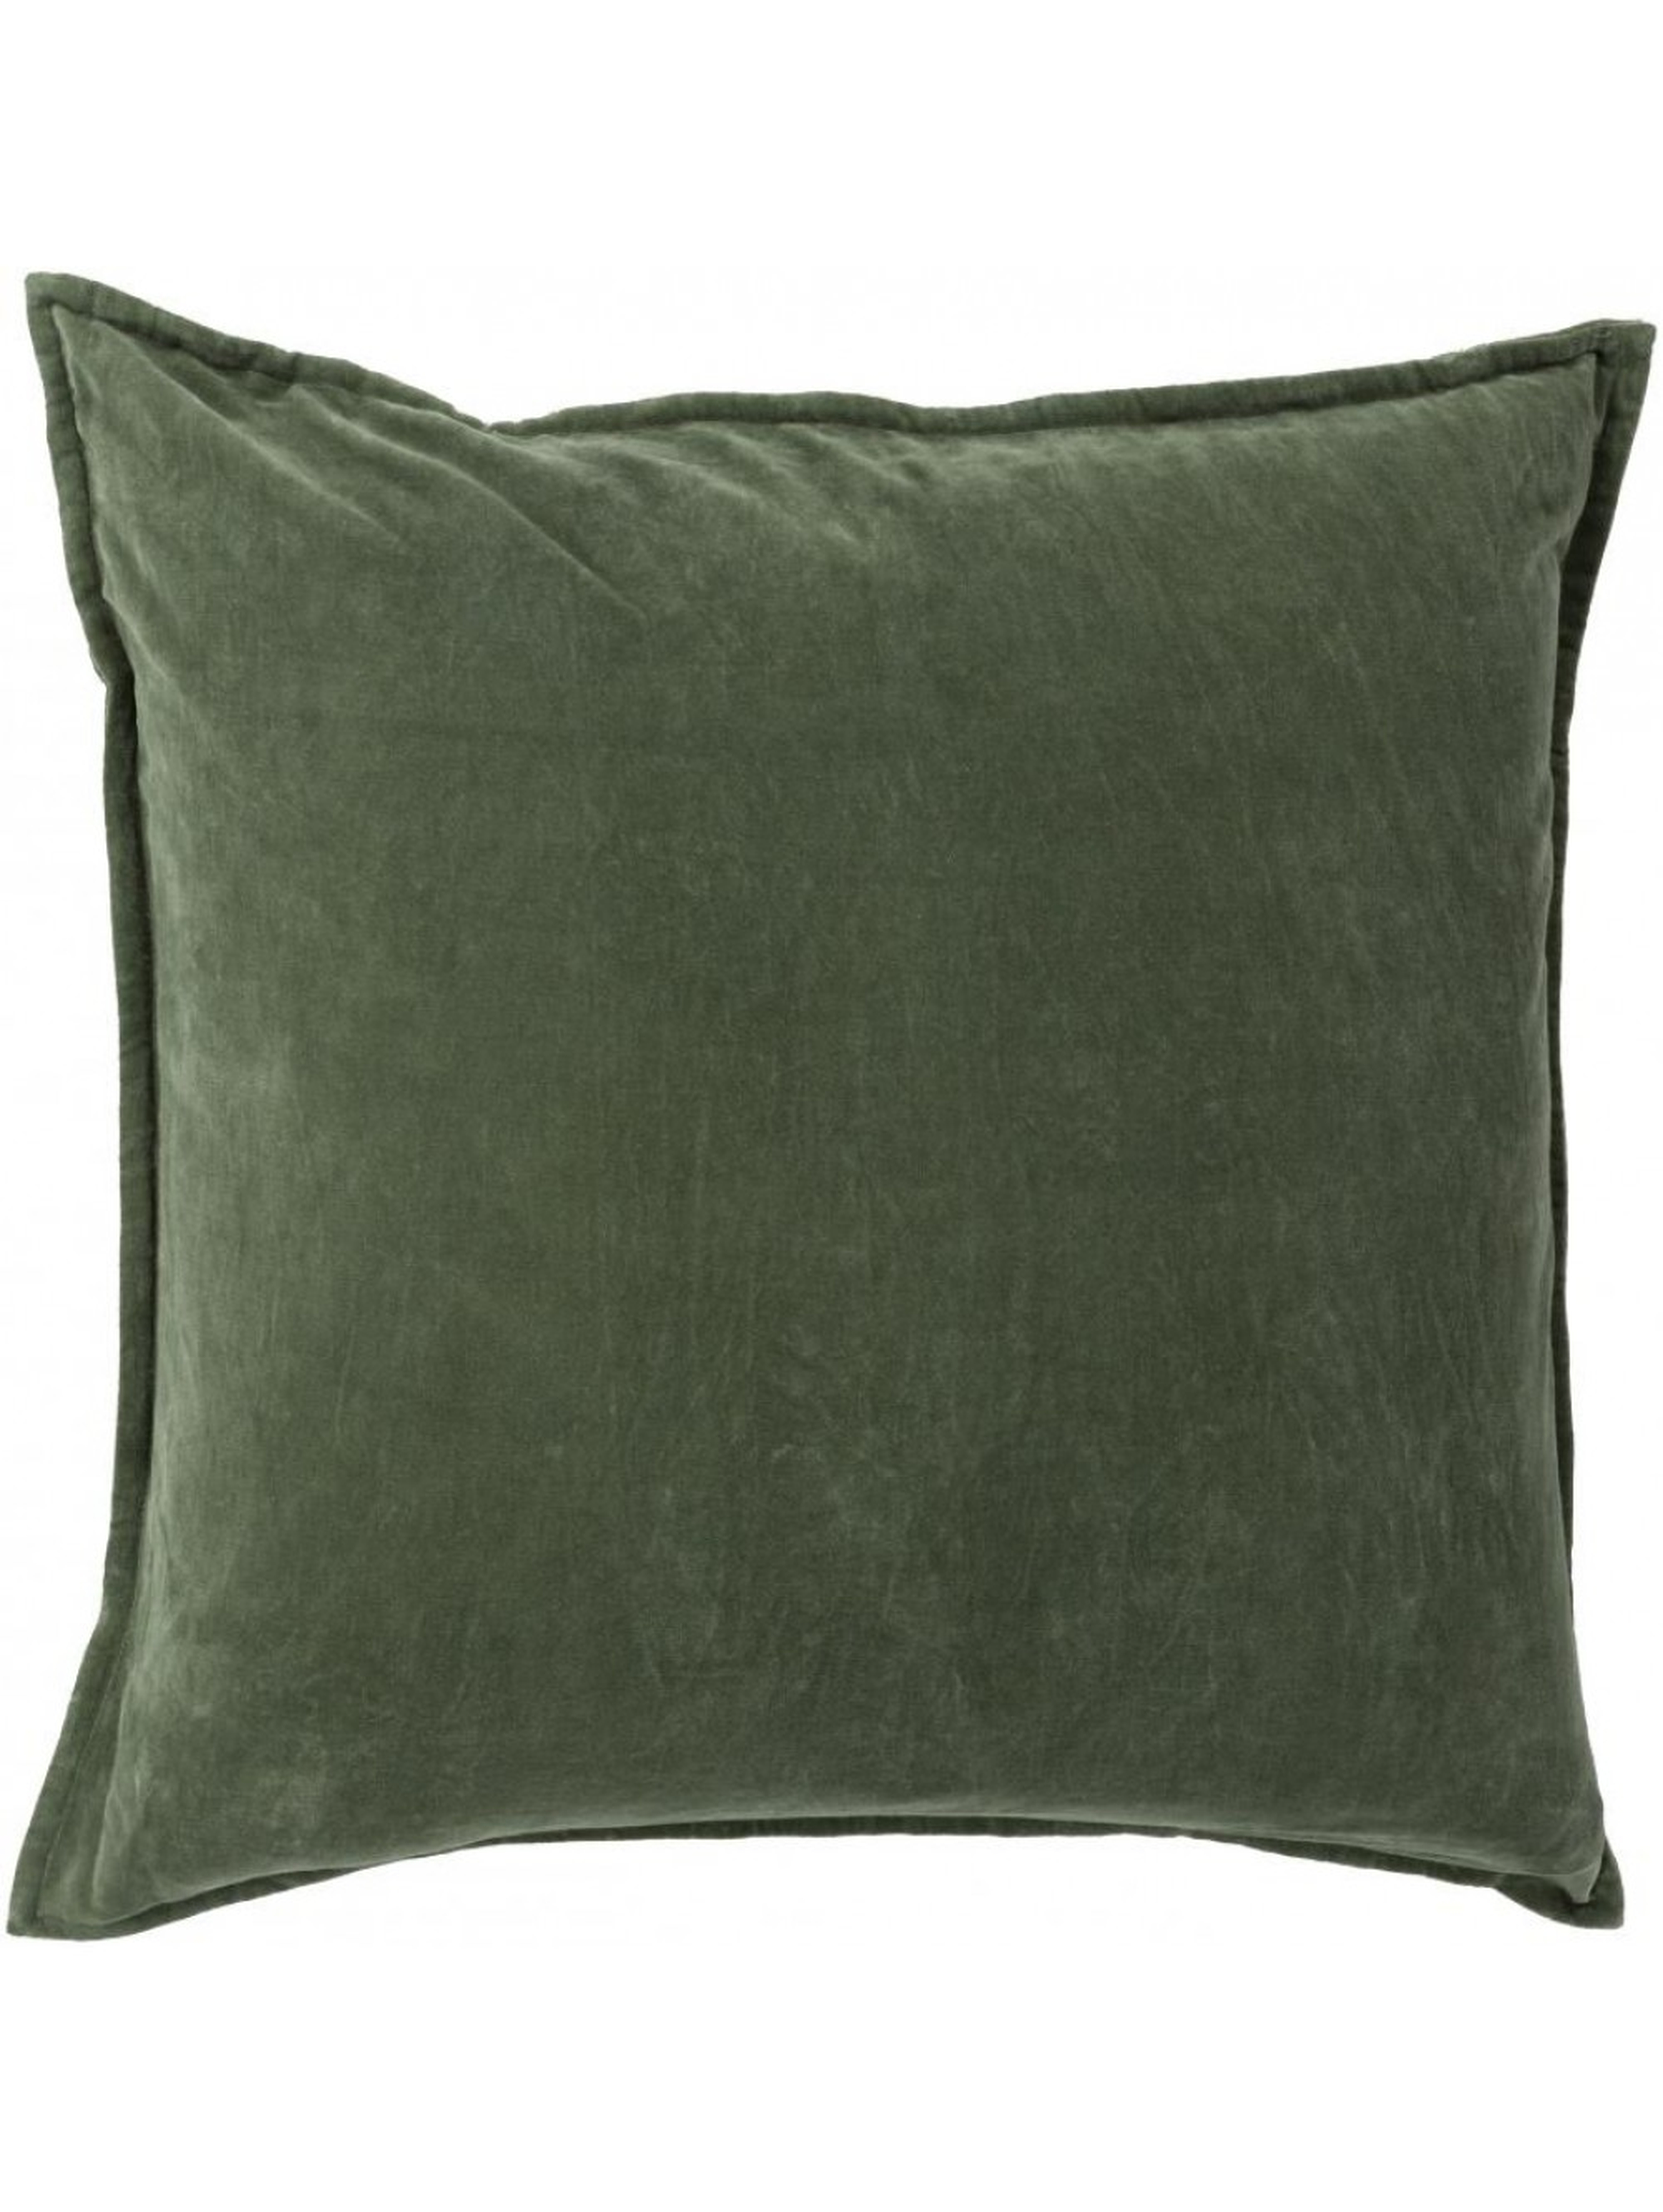 Maxen Pillow -  Dark Moss  - 20x20- Polyester Filled - Lulu and Georgia